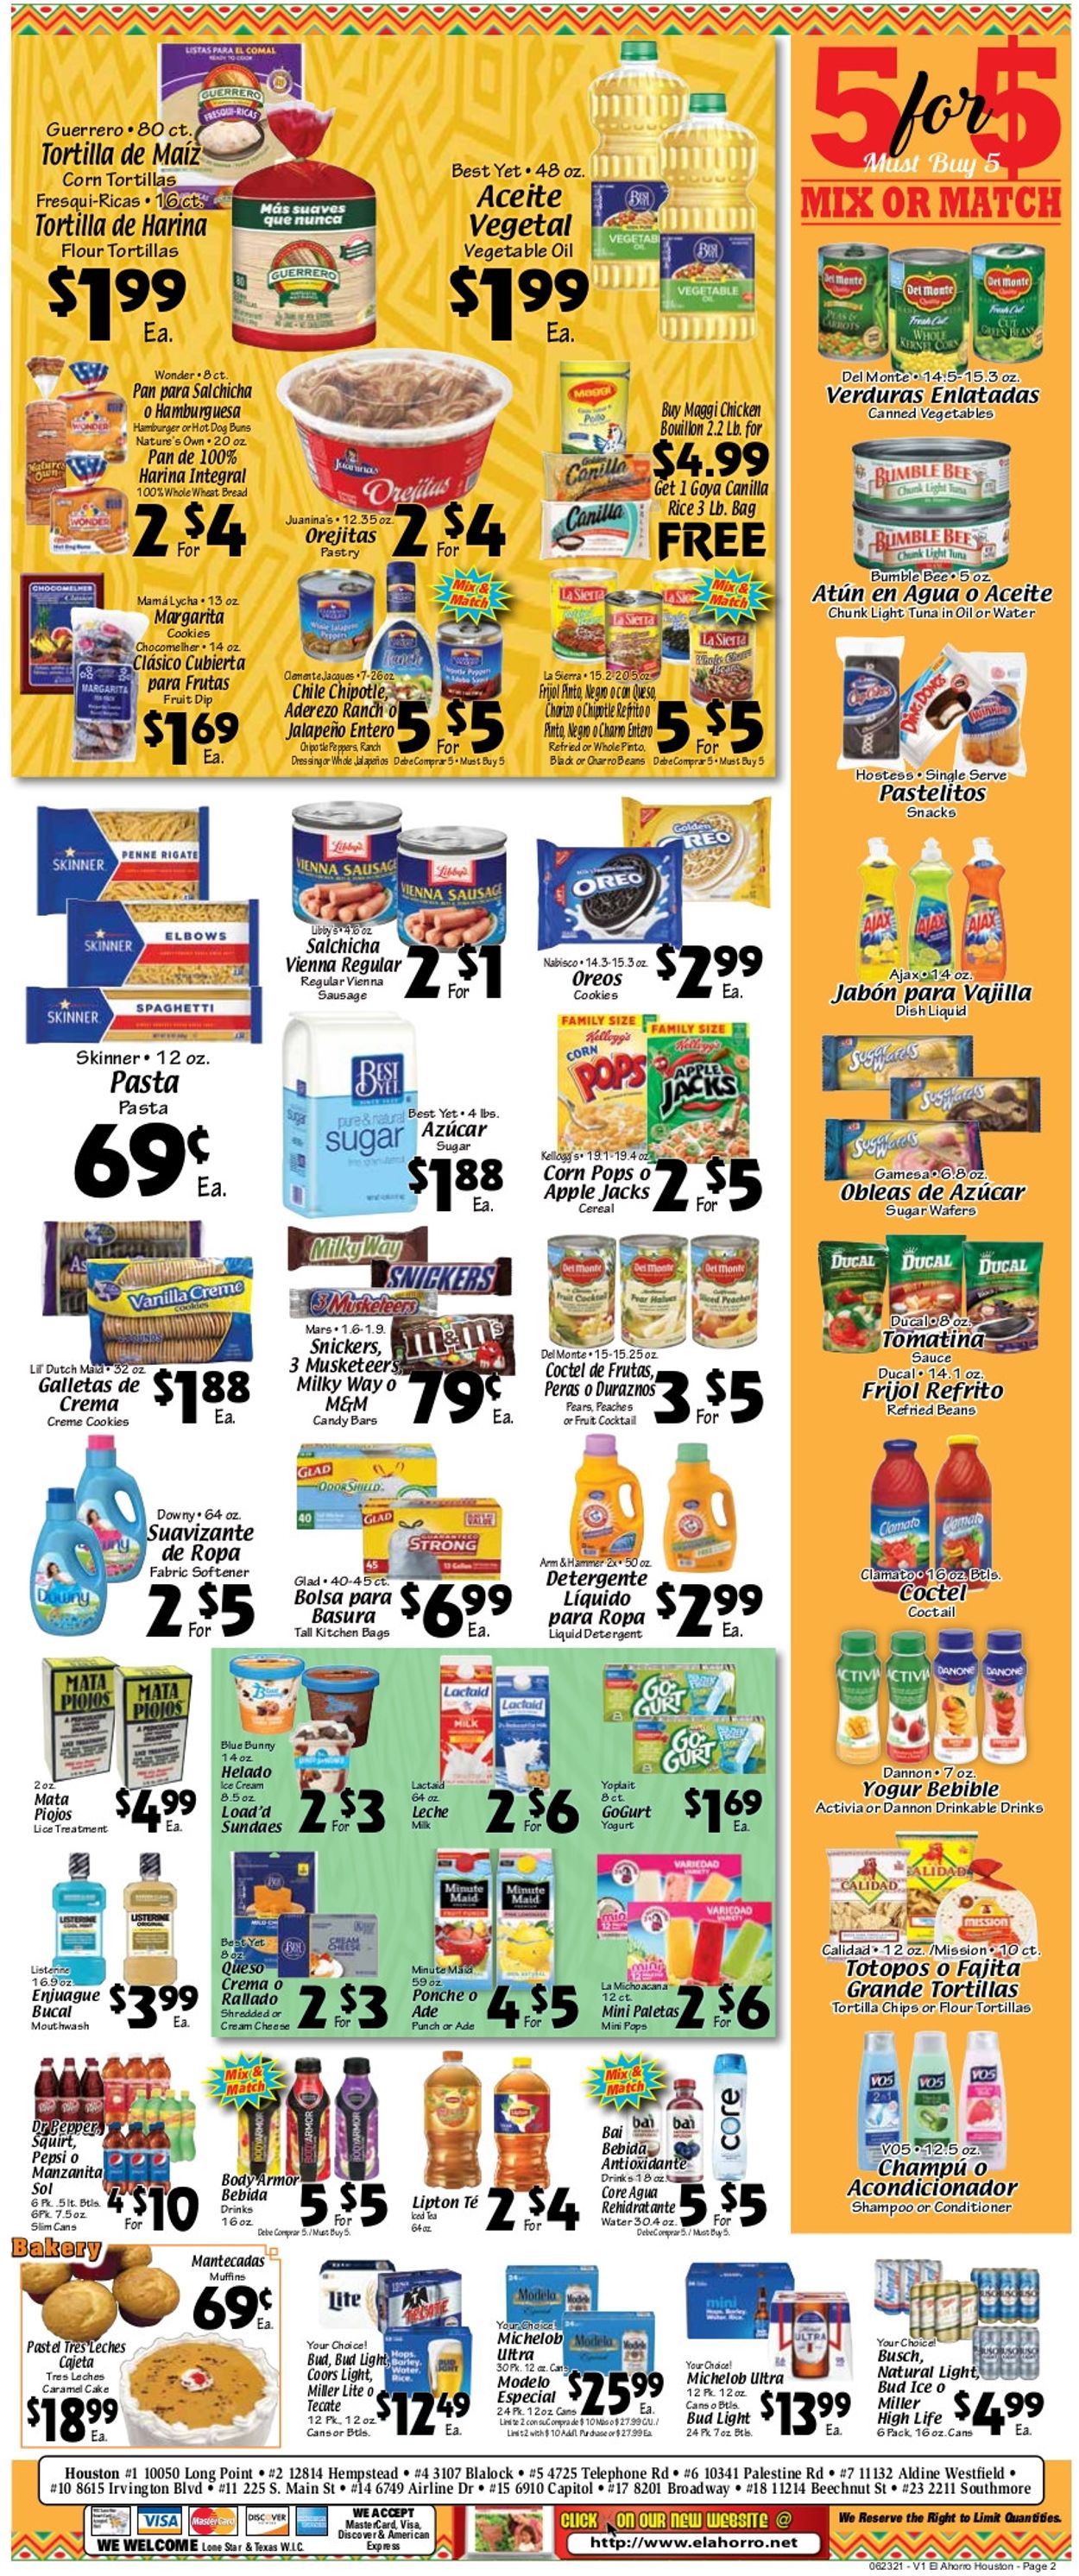 El Ahorro Supermarket Ad from 06/23/2021